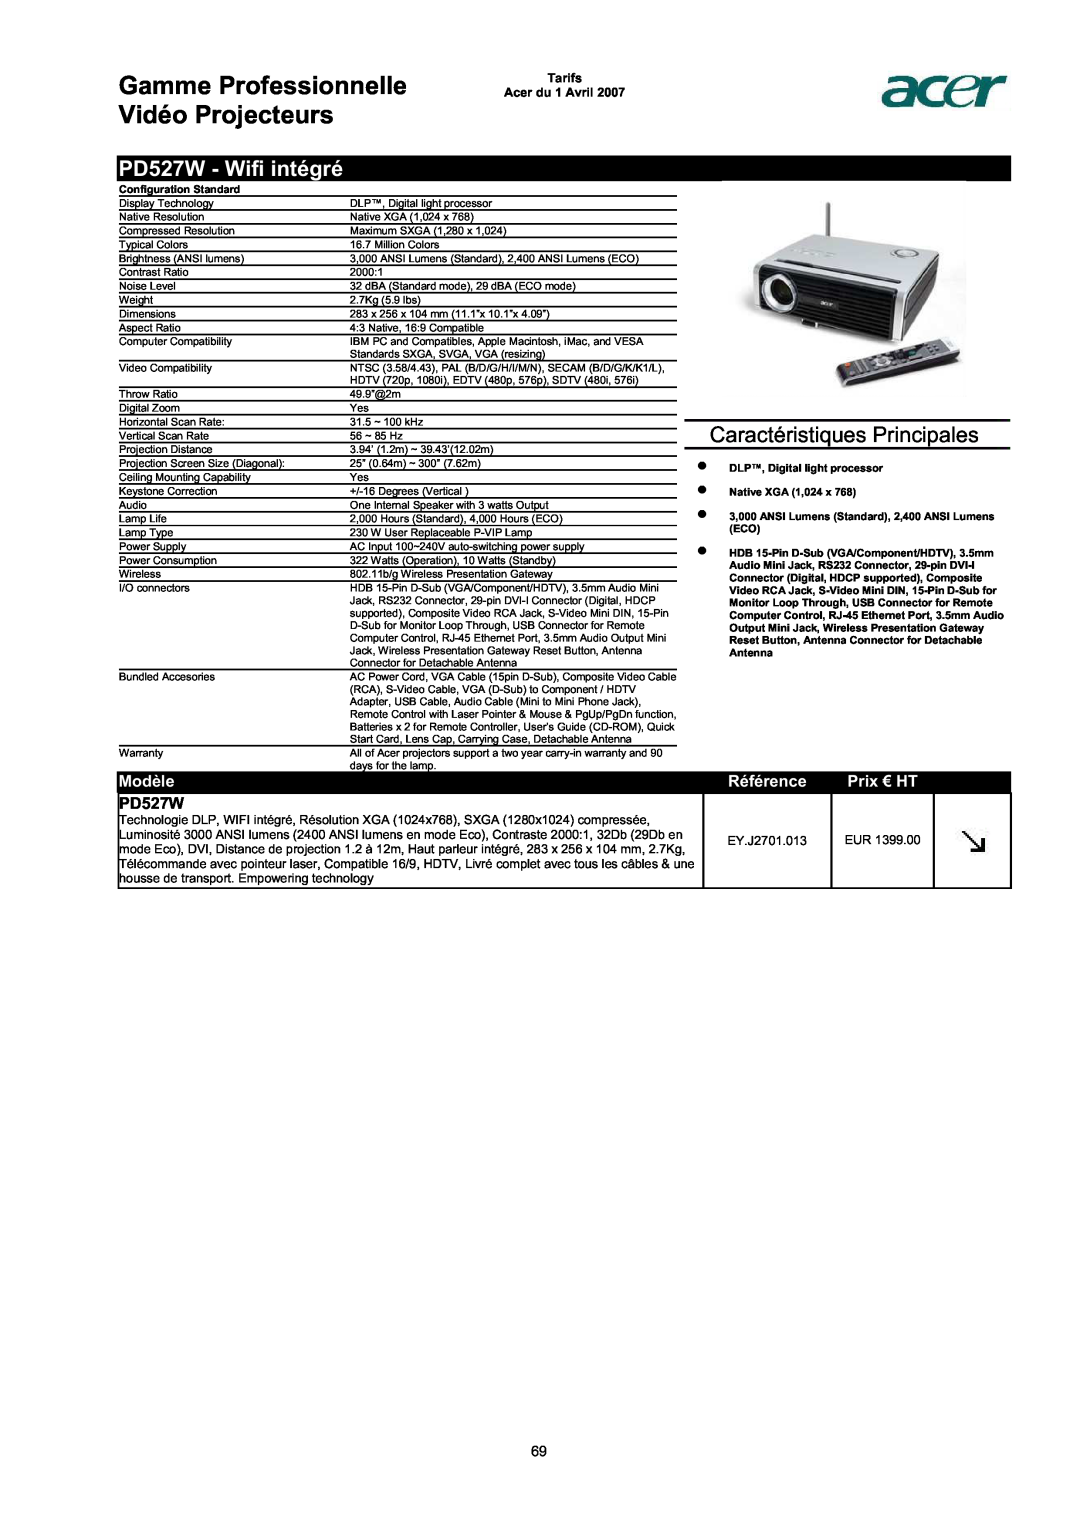 Acer AC713B-17 PD527W - Wifi intégré, Gamme Professionnelle Vidéo Projecteurs, Caractéristiques Principales, Modèle 